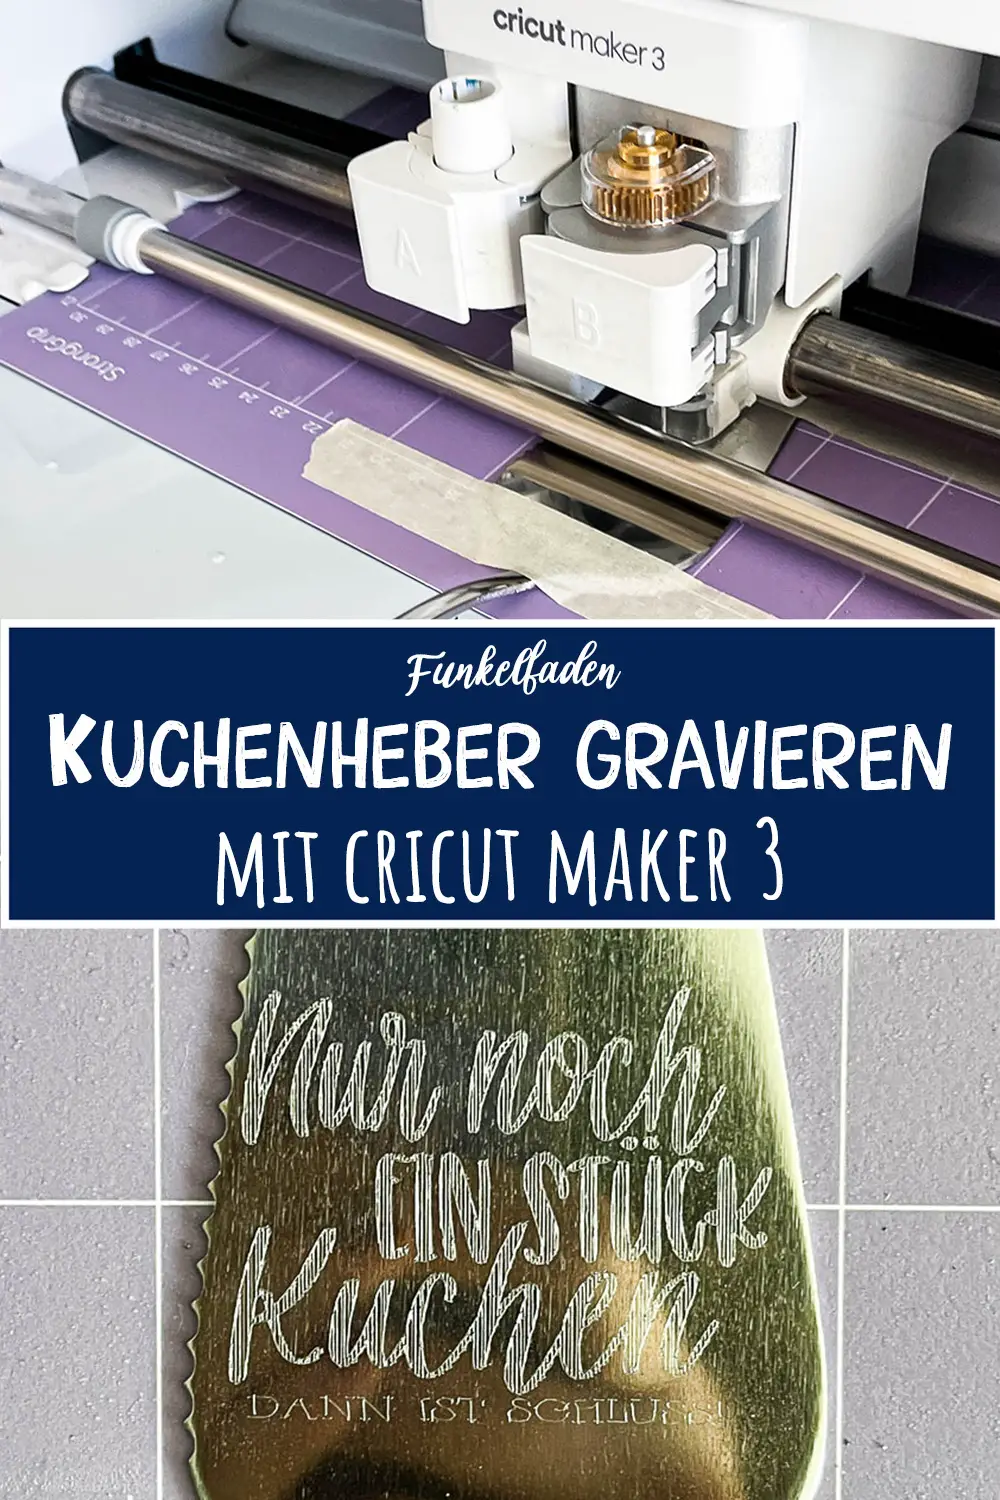 Anleitung Kuchenheber gravieren mit Cricut Maker 3